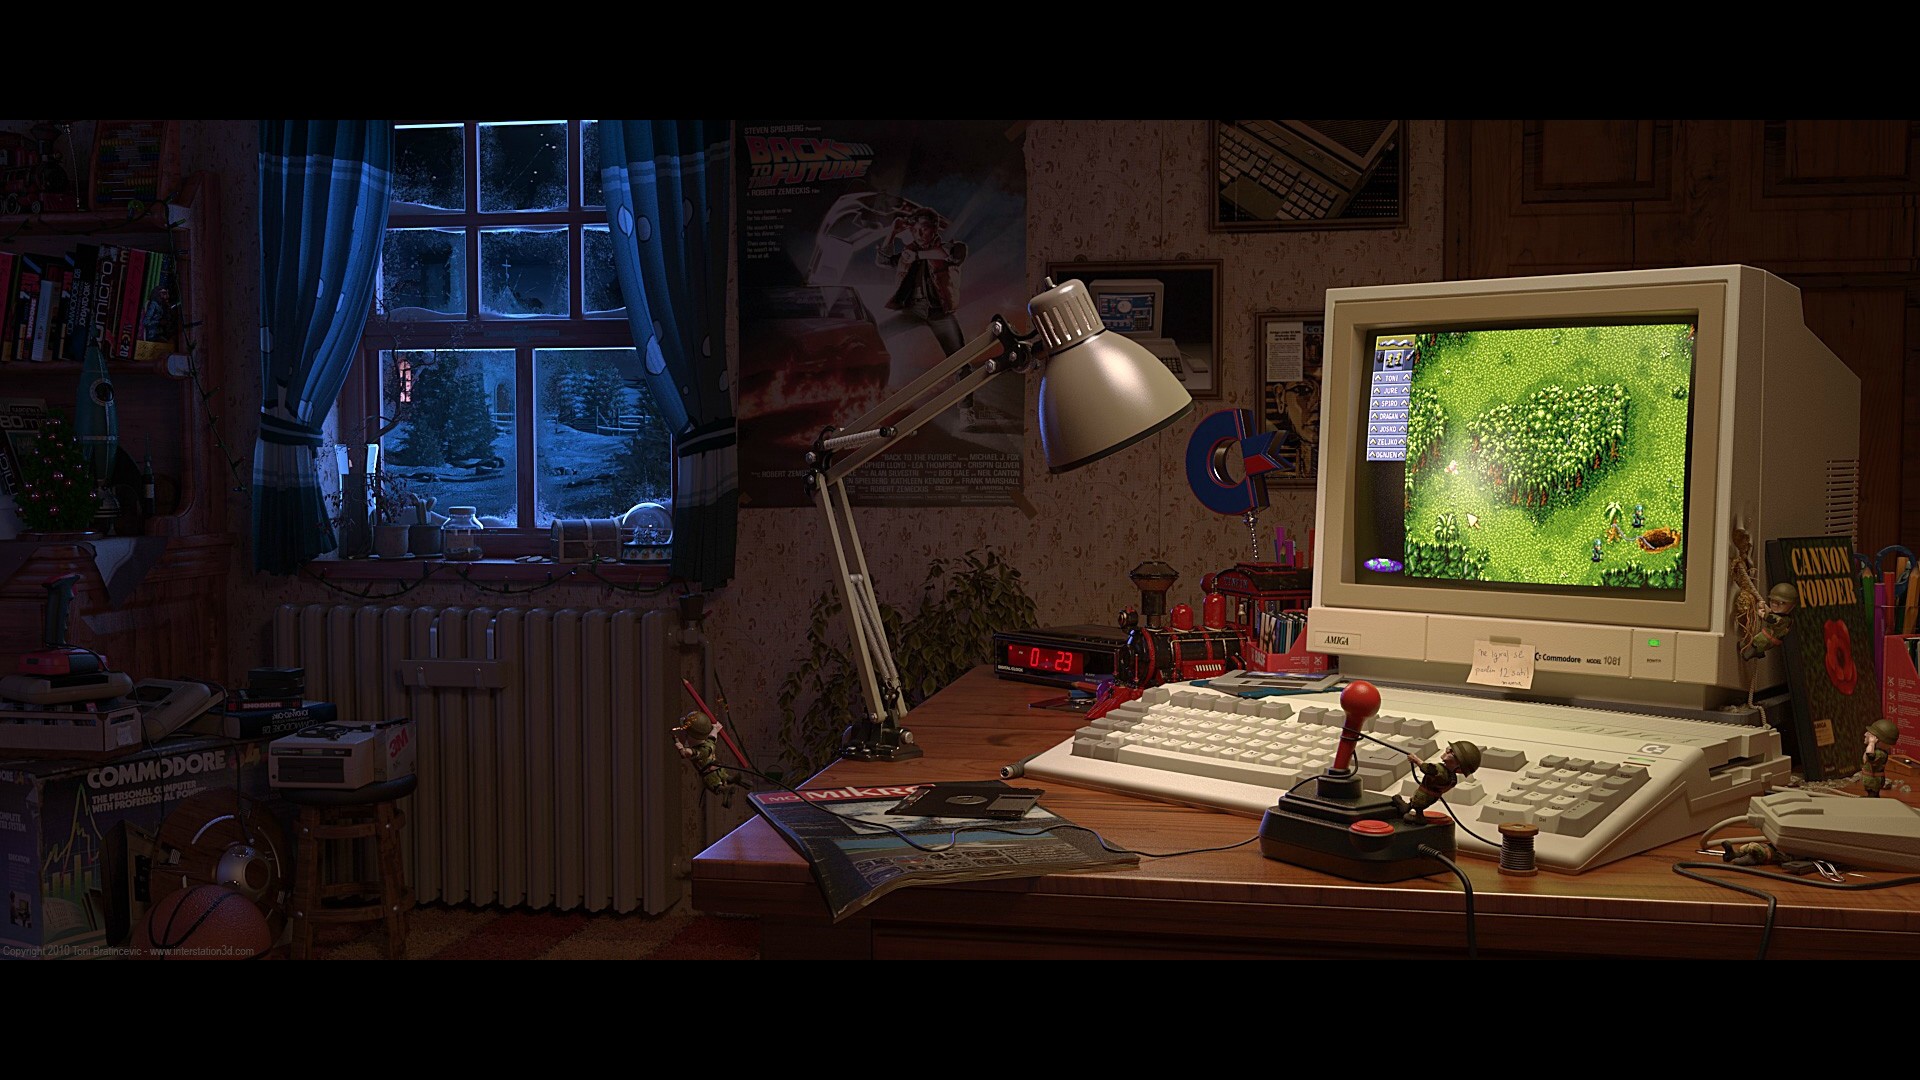 Best Amiga Wallpaper Dystopia